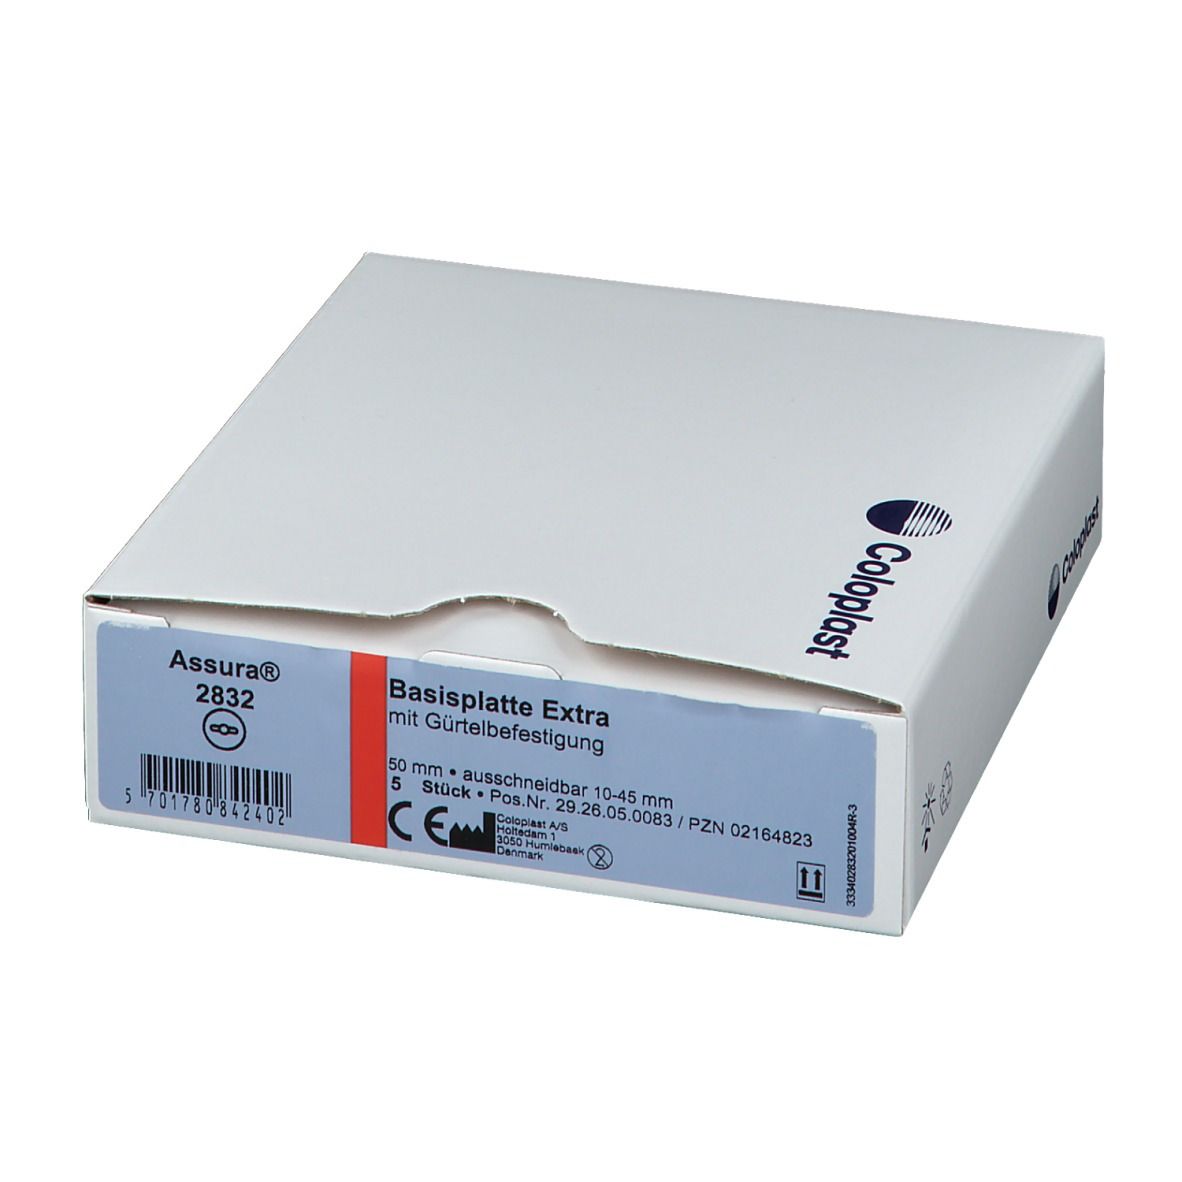 ASSURA® Basisplatten extra, 10-45mm Rastring 50mm